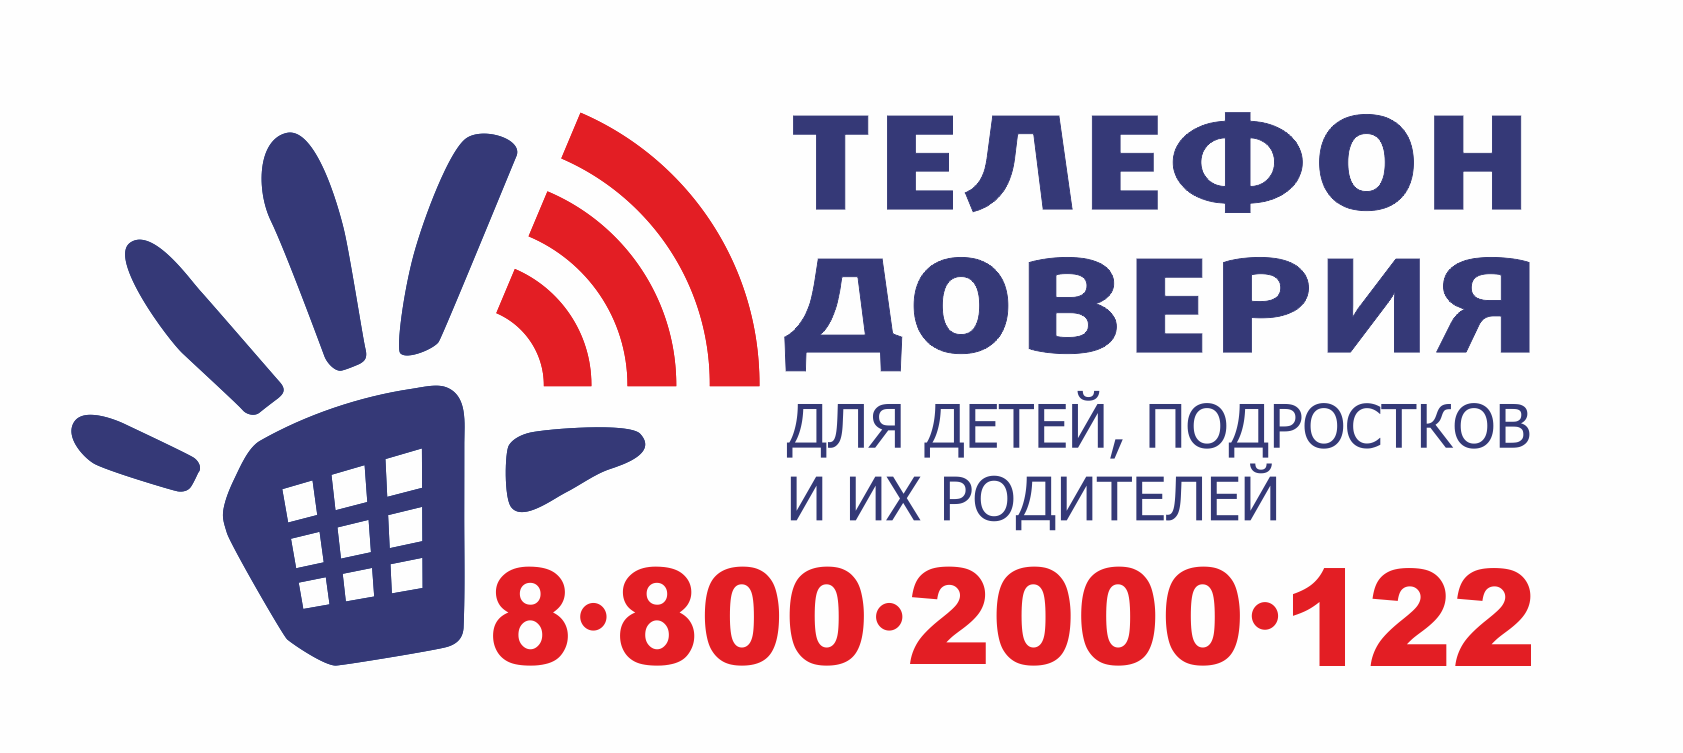 Единый общероссийский номер детского телефона доверия:  8-800-2000-122 (круглосуточно)